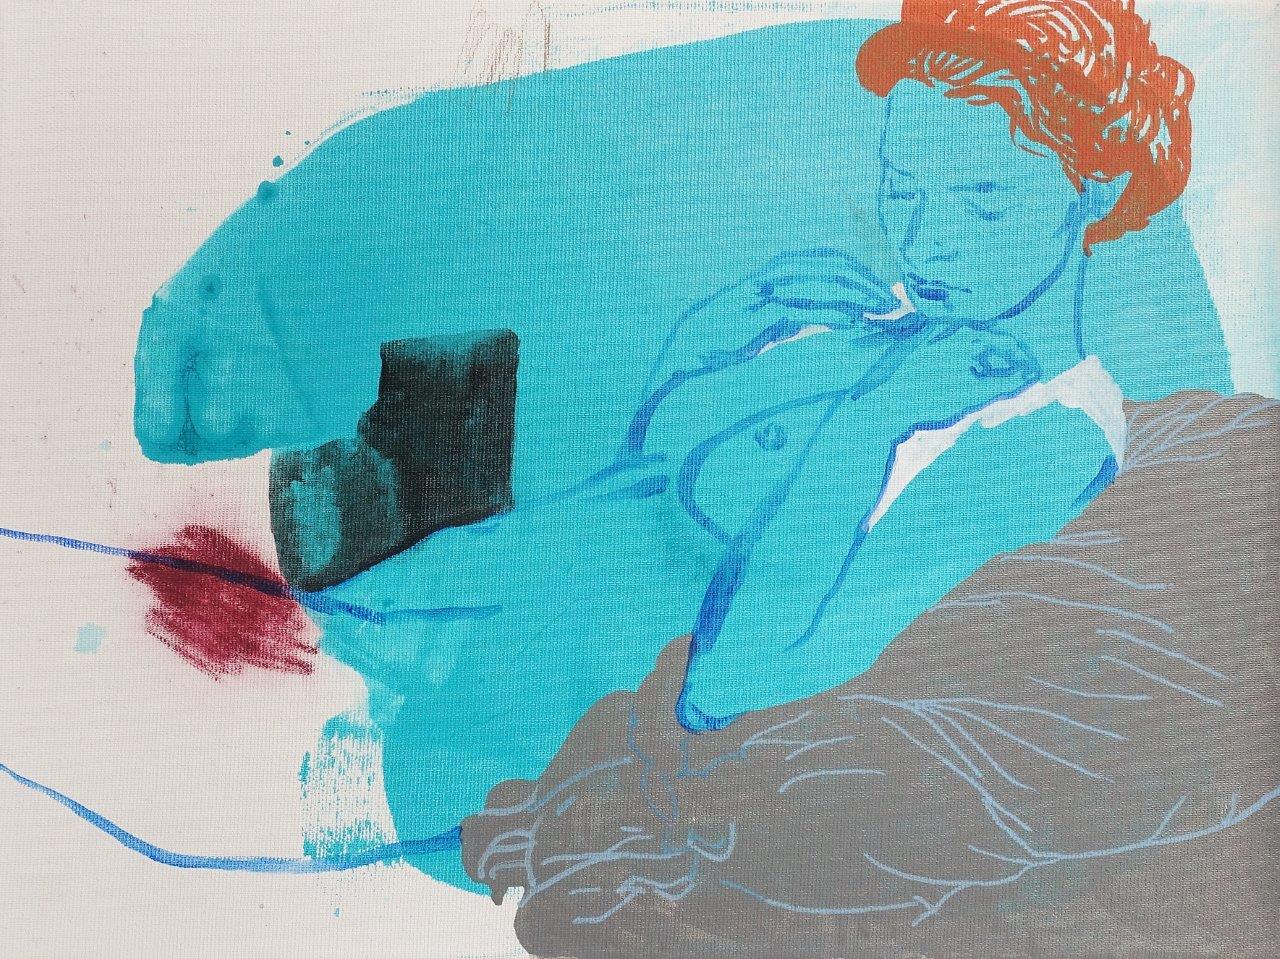 Agnieszka Sandomierz - It is still going on (Tempera on canvas | Size: 46 x 36 cm | Price: 3500 PLN)